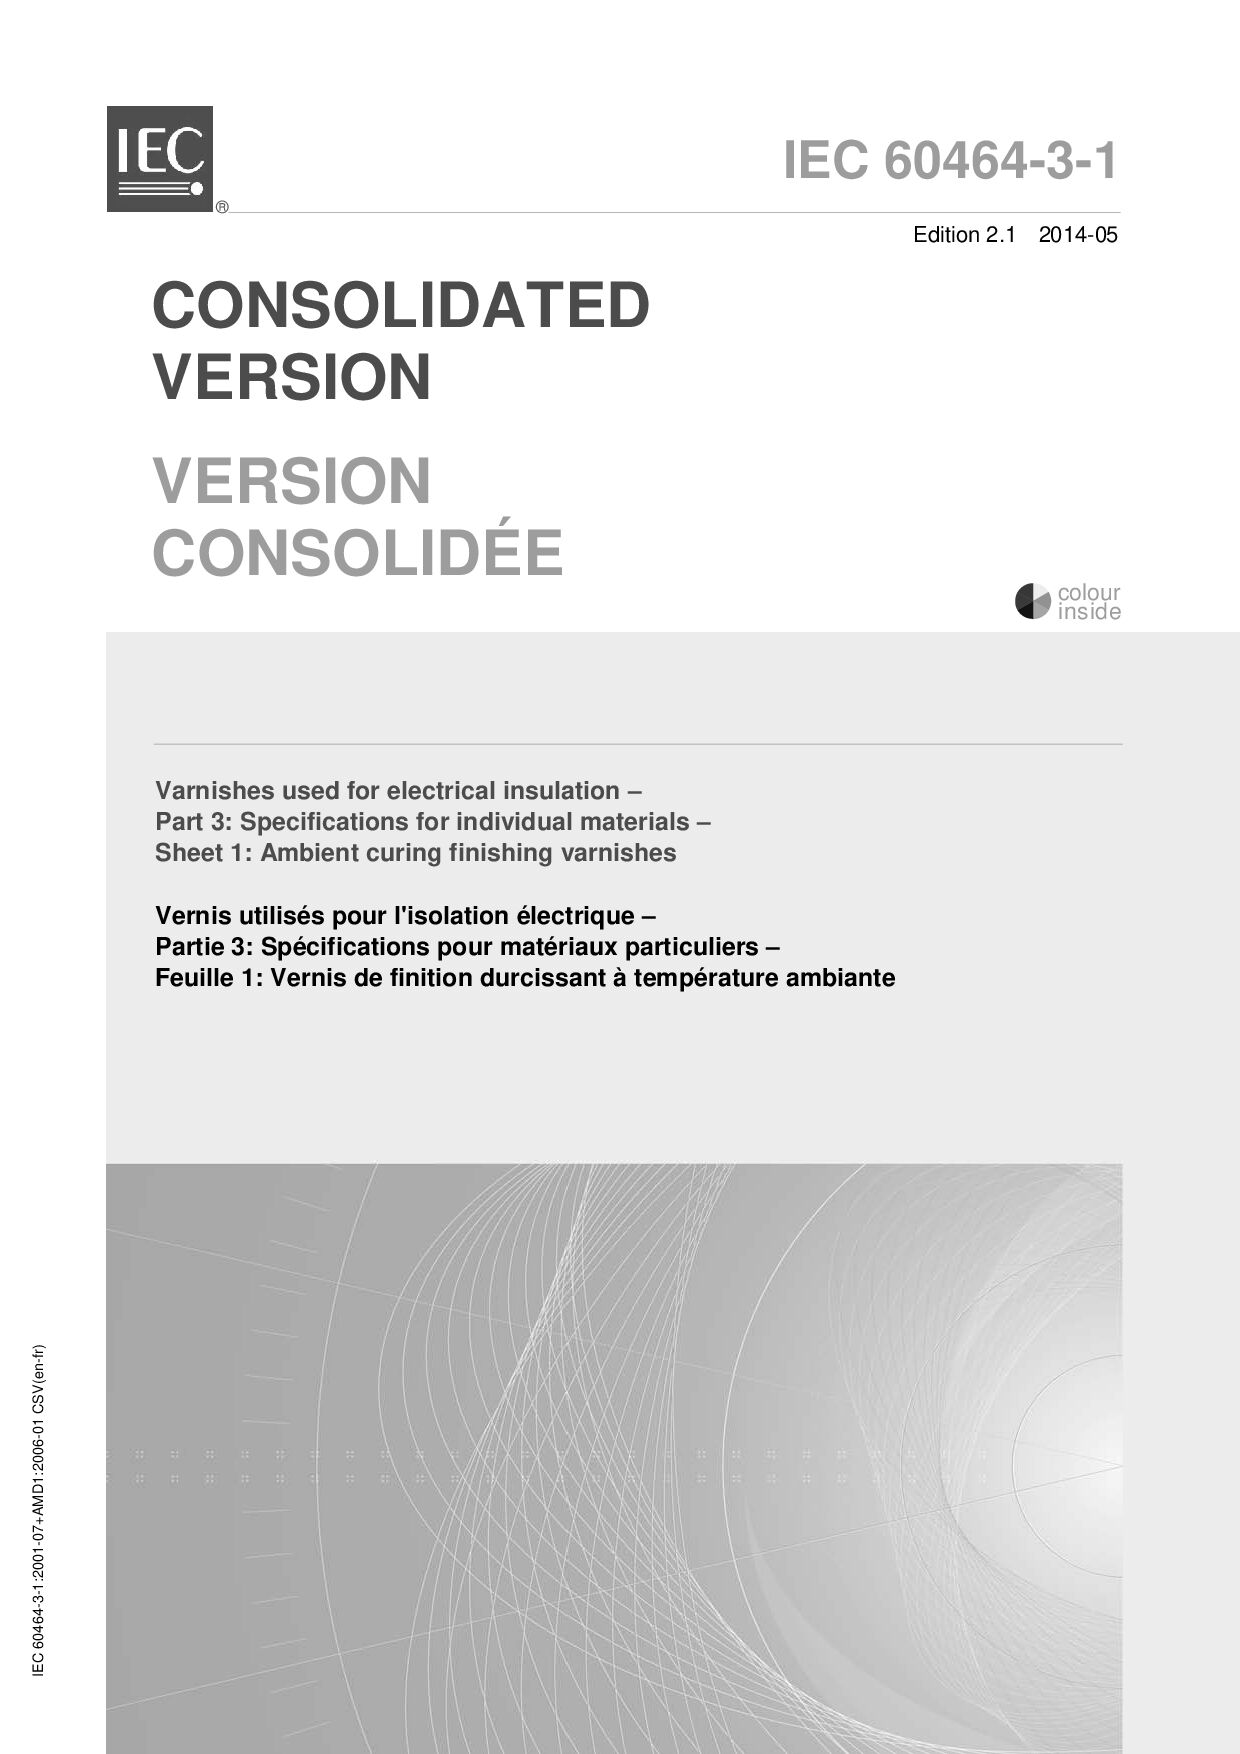 IEC 60464-3-1:2014封面图